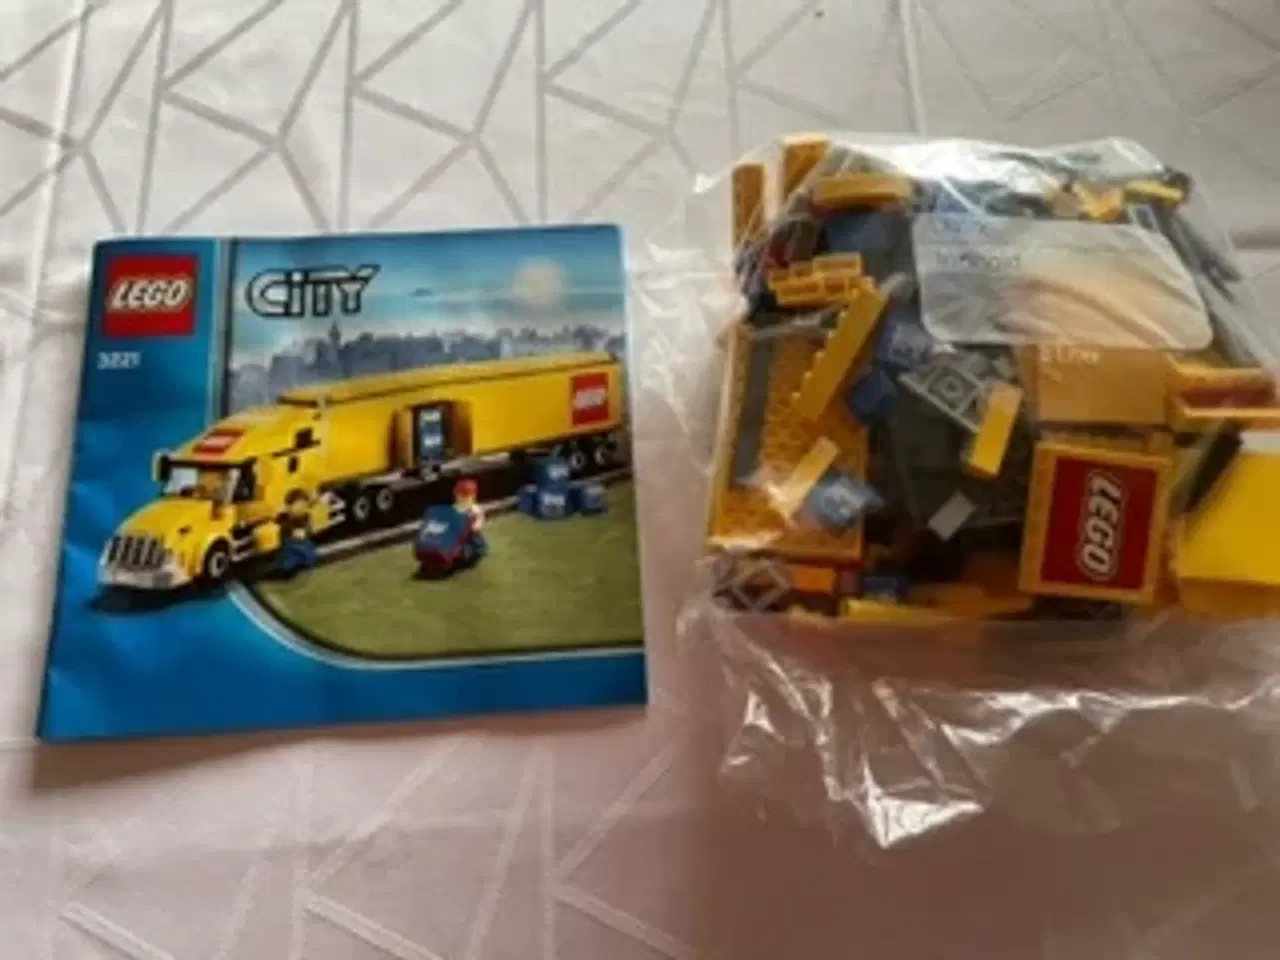 Billede 1 - Lego City 3221 fragtlastbil